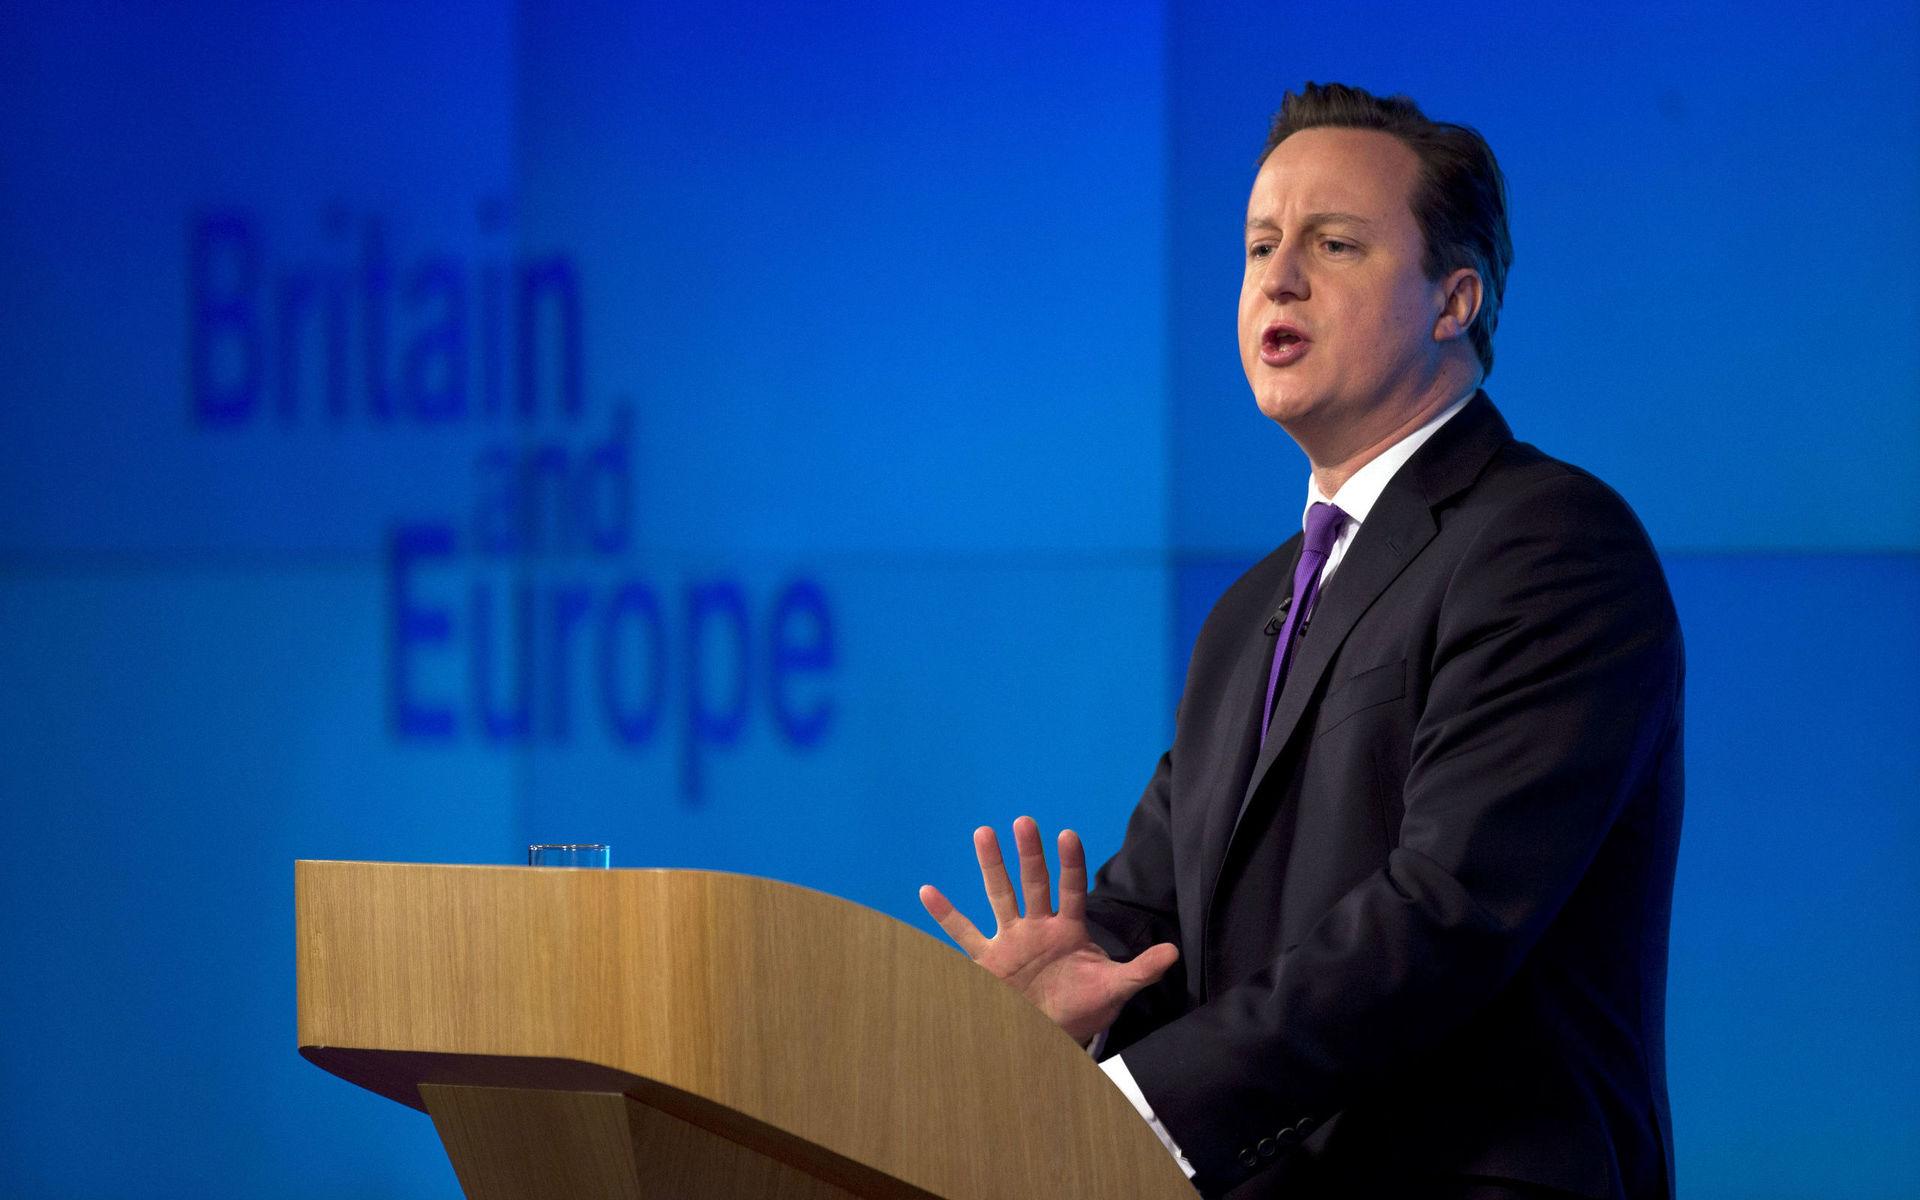 Ett tal i London den 23 januari 2013 satte brexitbollen i rullning när Storbritanniens dåvarande premiärminister David Cameron utlovade en ny folkomröstning om EU. Arkivfoto.